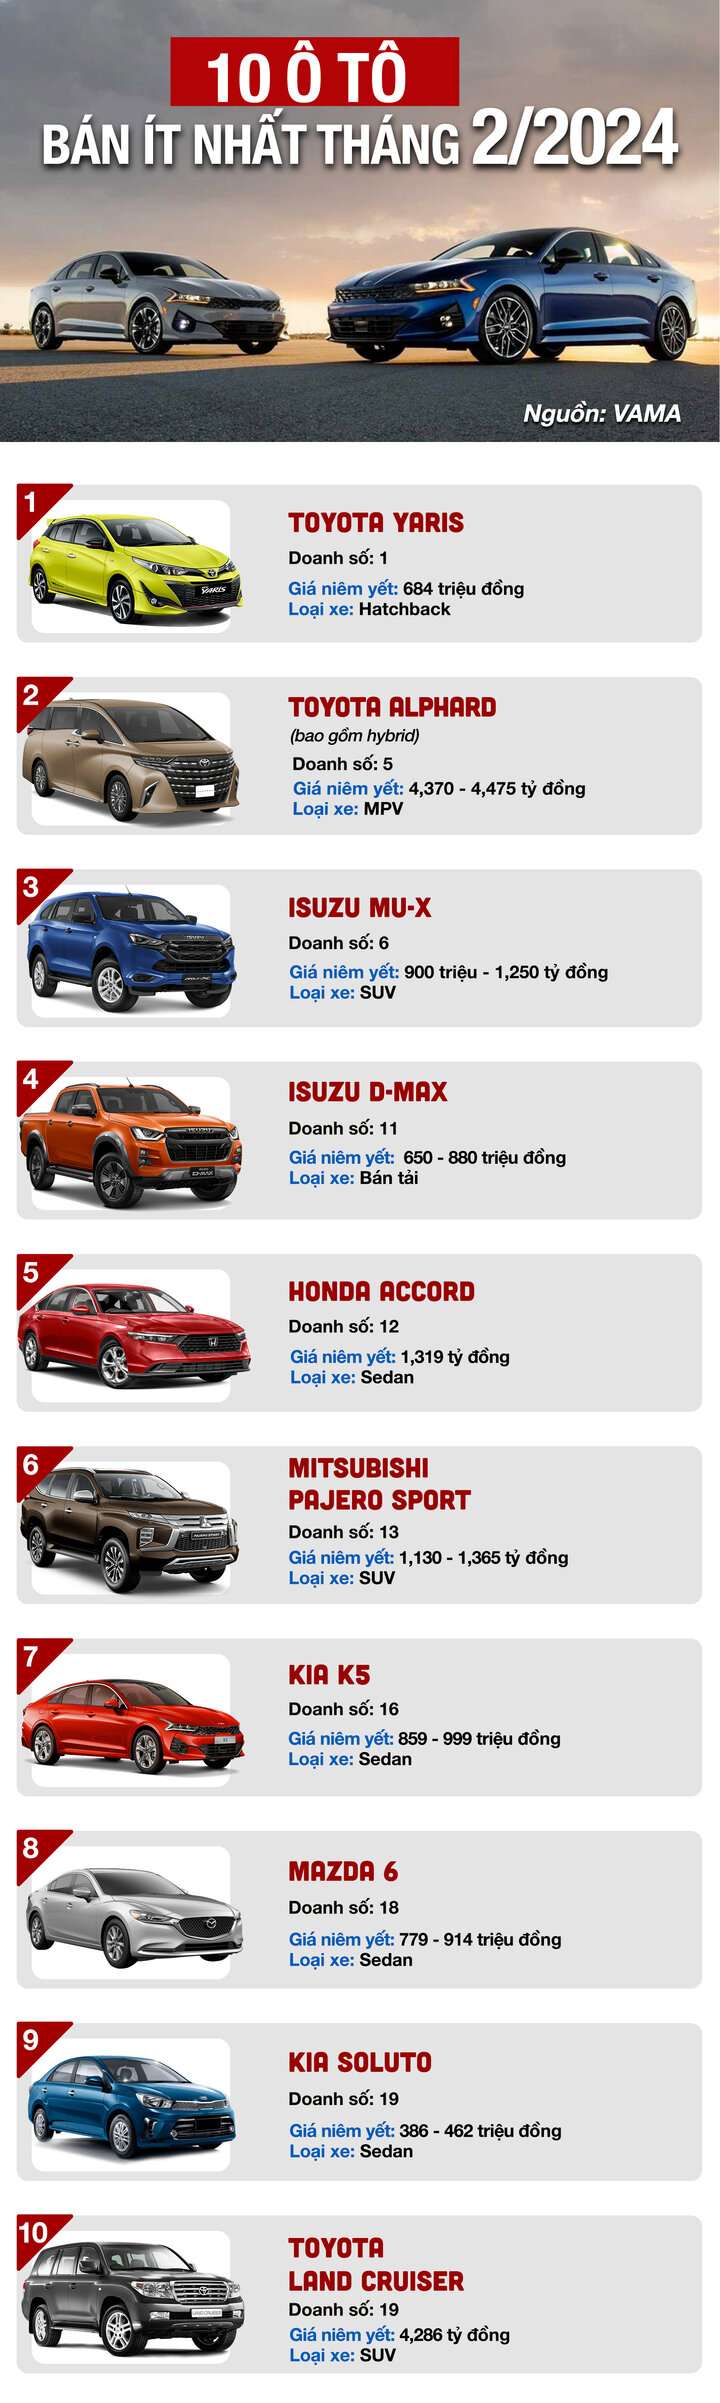 Infographic: 10 mẫu ô tô bán ít nhất tháng 2/2024 - 1